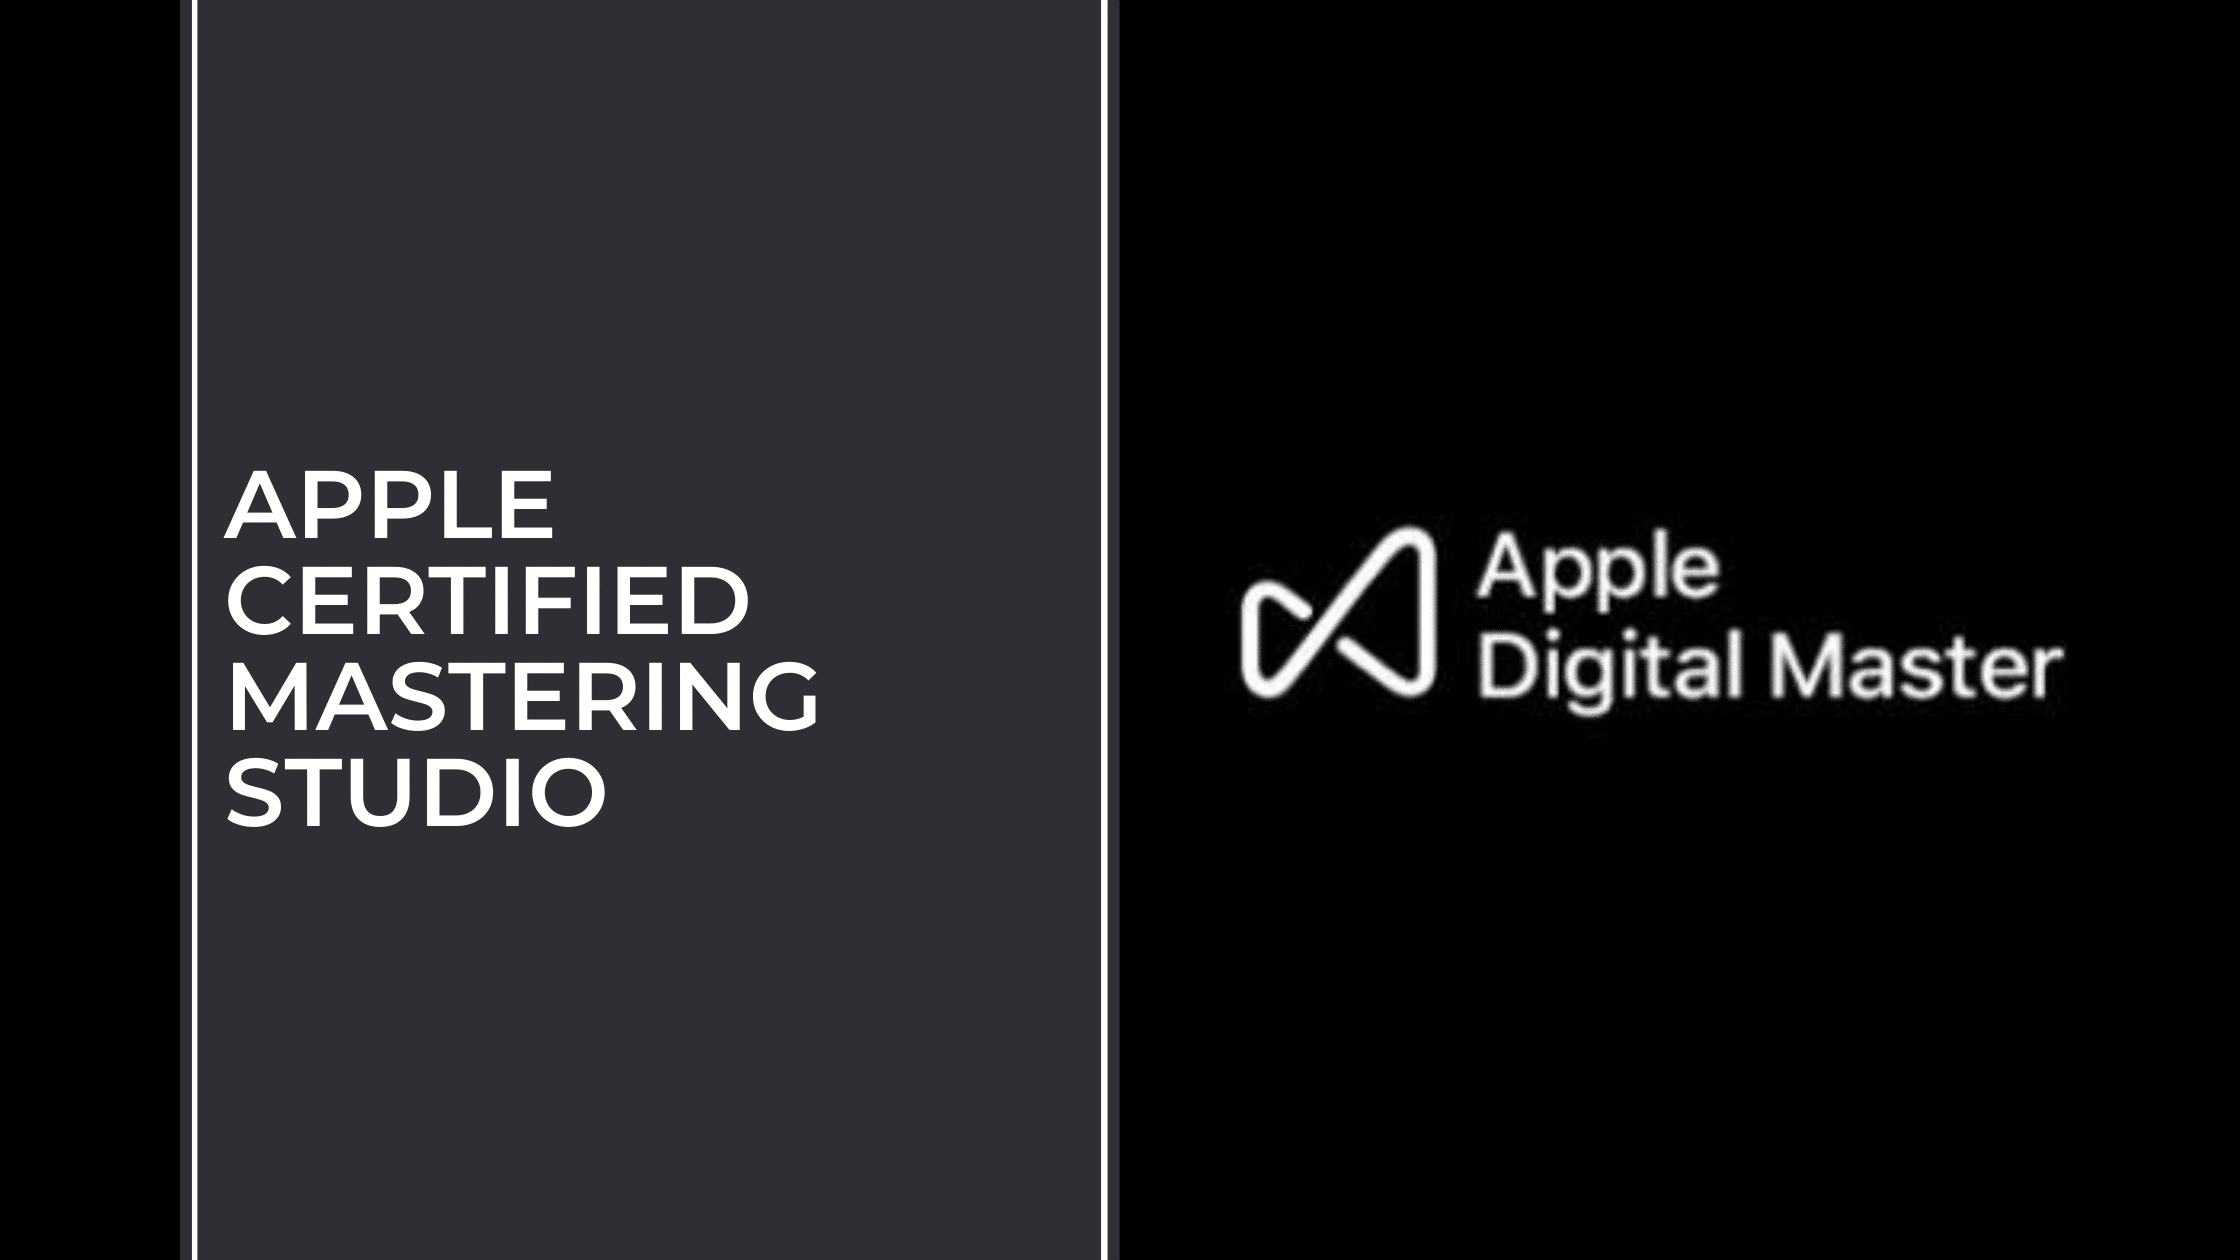 Apple Digital Masters Certified Mastering Studio